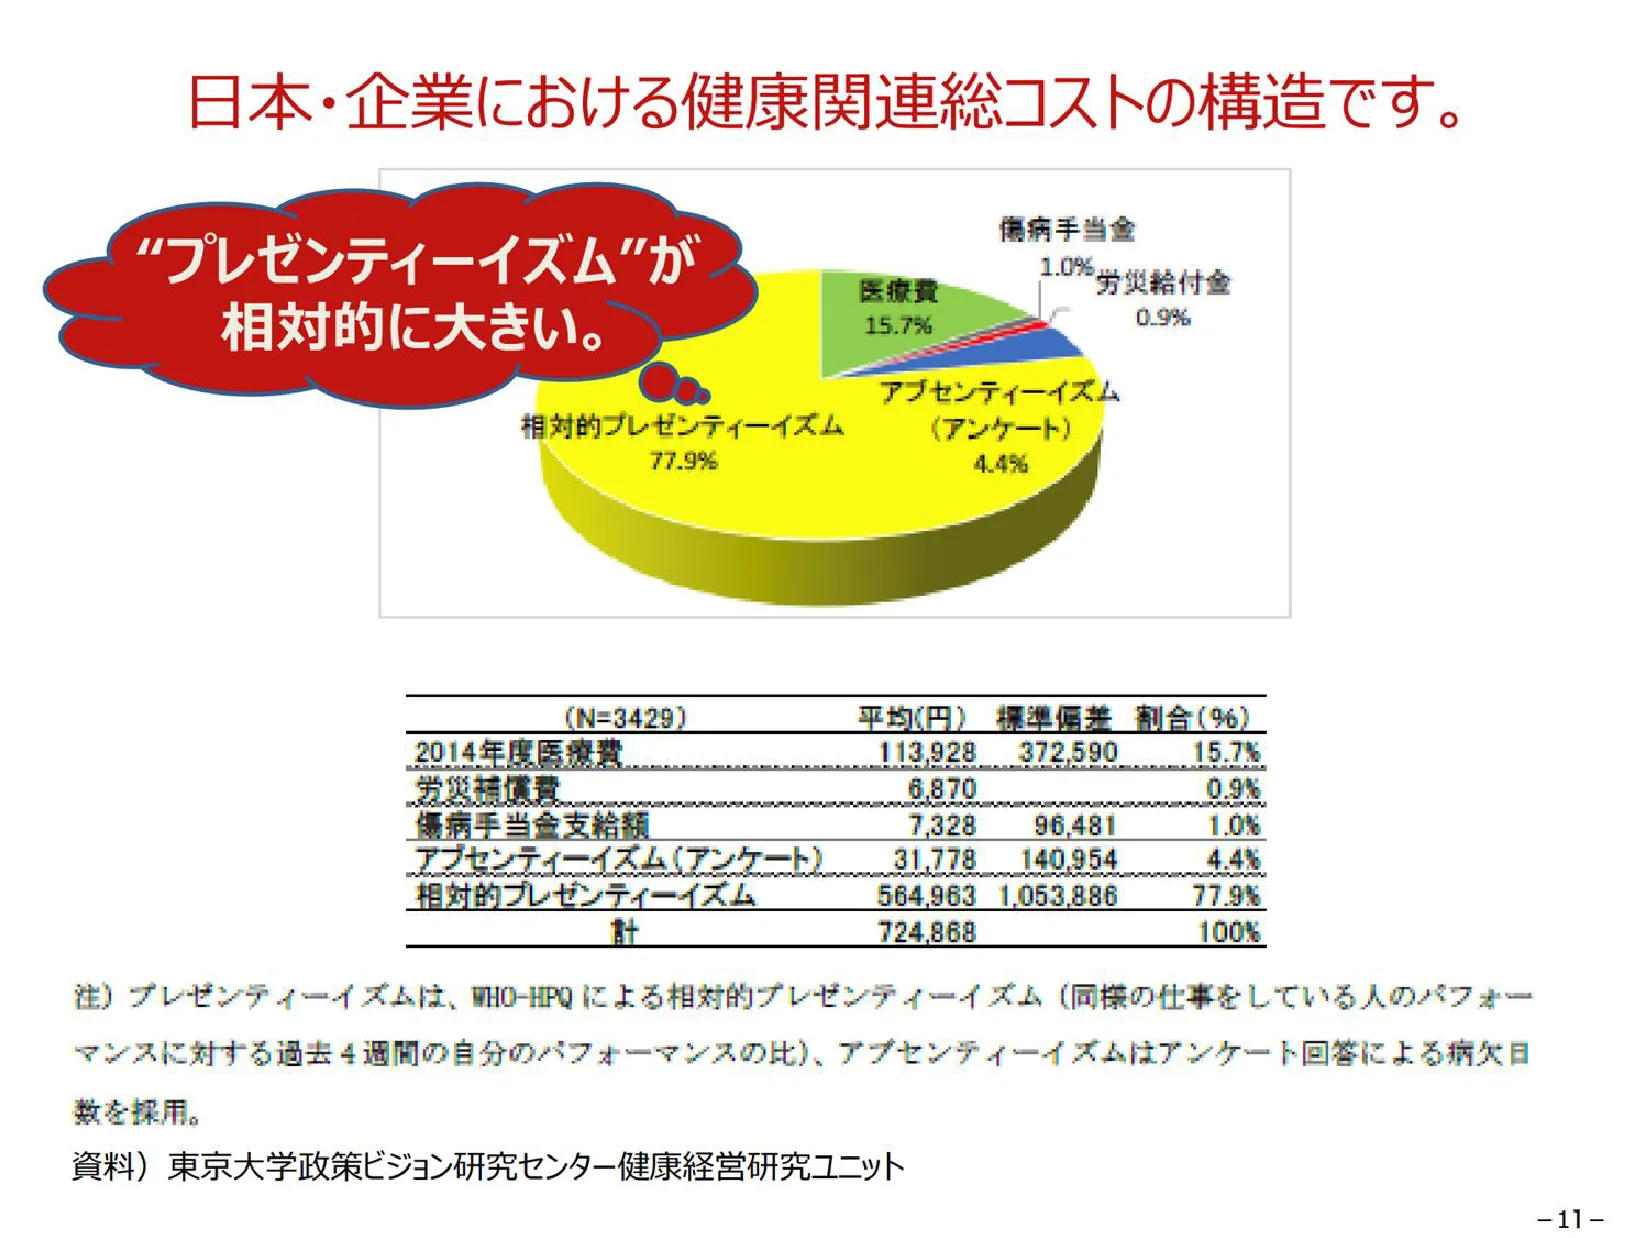 日本・企業における健康関連総コストの構造です。